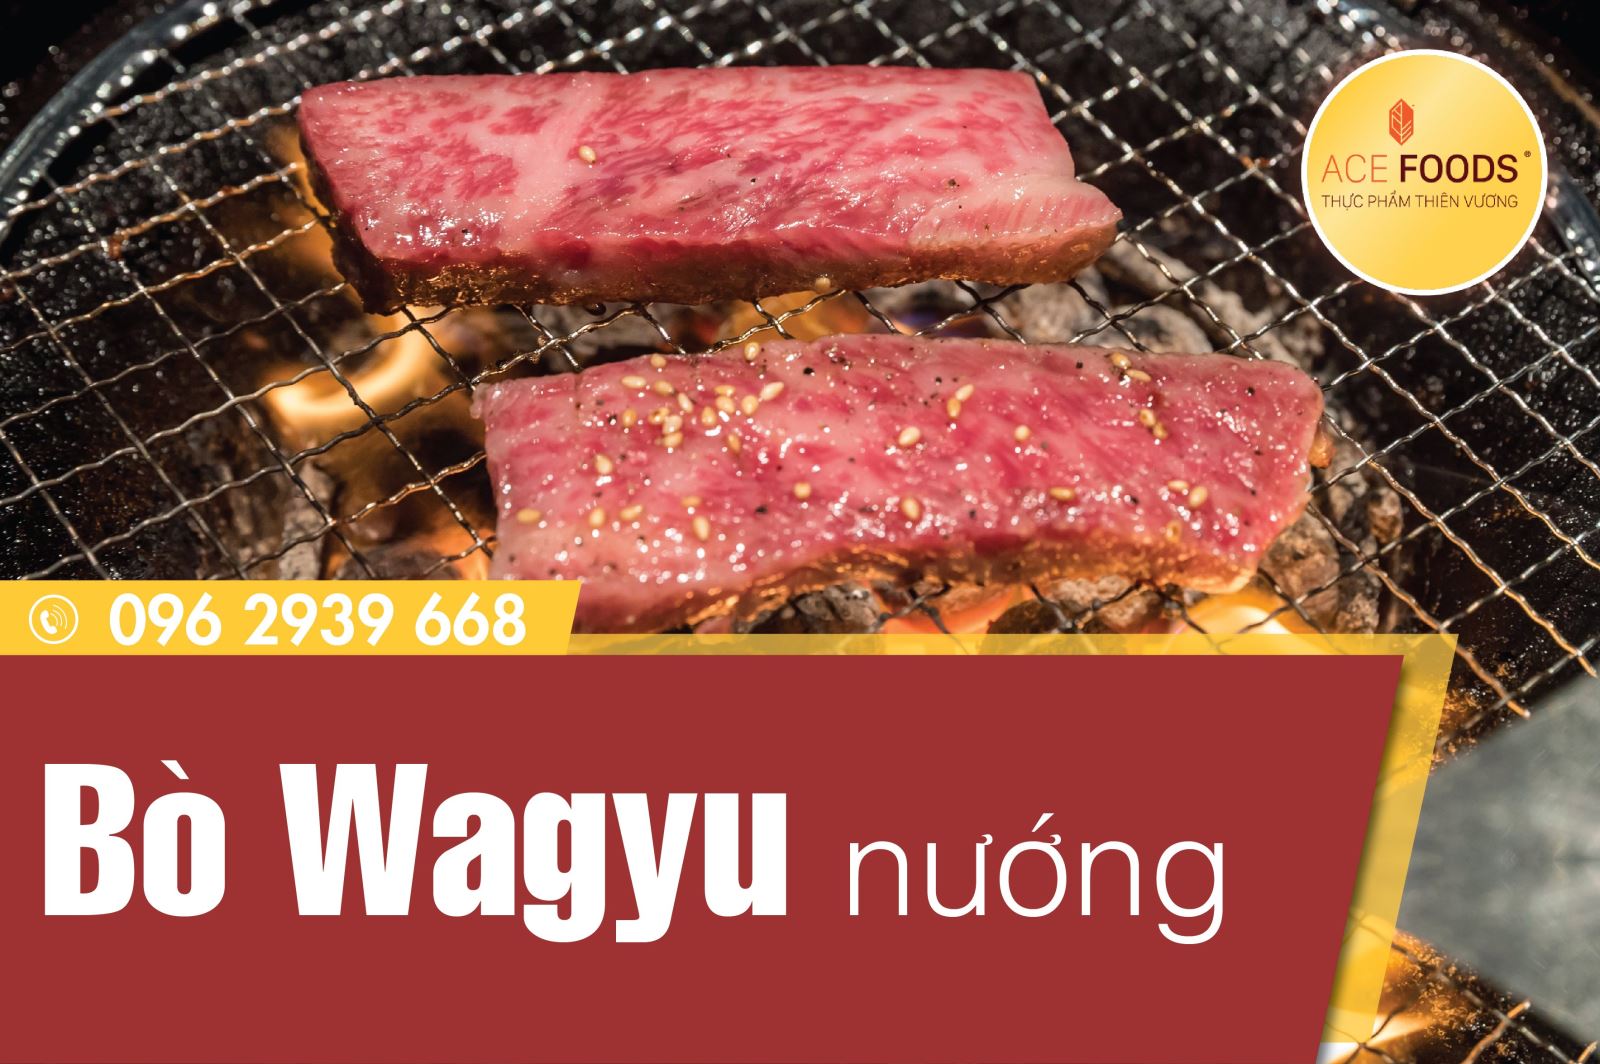 Bò wagyu nướng